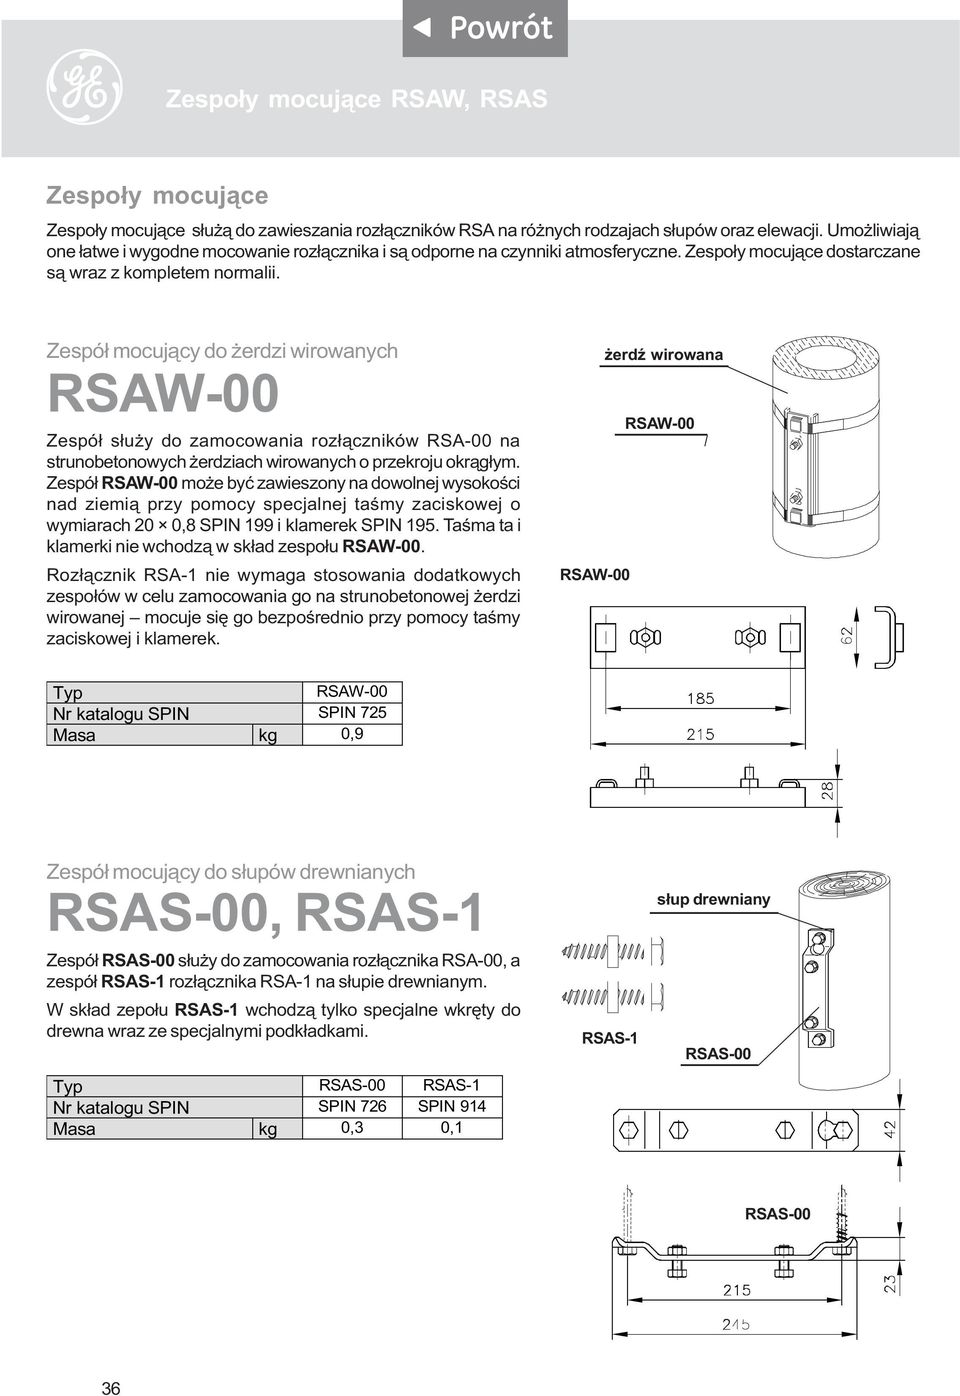 Zespó³ mocuj¹cy do erdzi wirowanych RSAW-00 Zespó³ s³u y do zamocowania roz³¹czników RSA-00 na strunobetonowych erdziach wirowanych o przekroju okr¹g³ym.